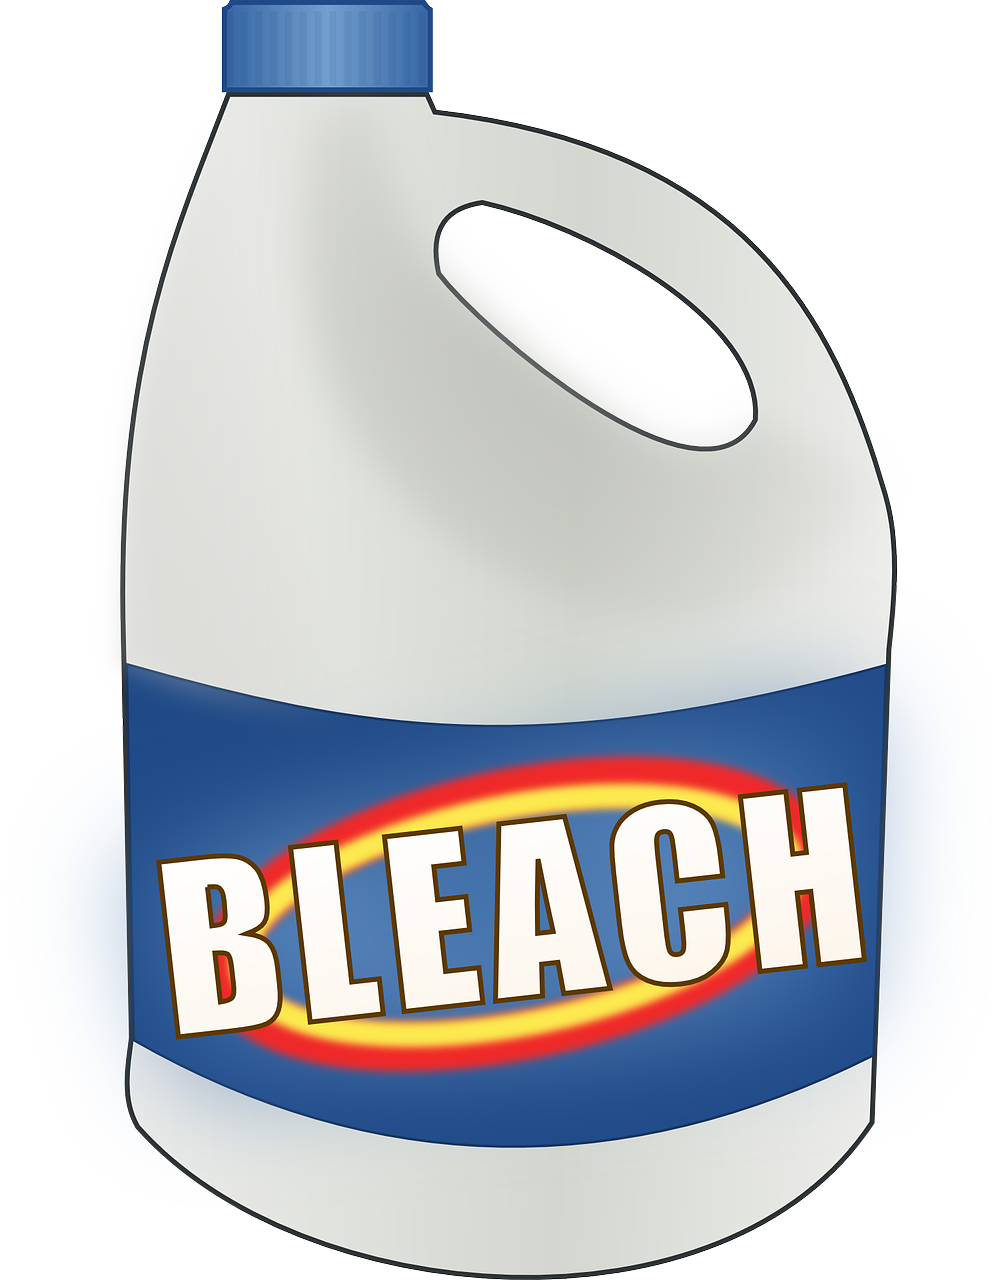 Chlorine Bleach